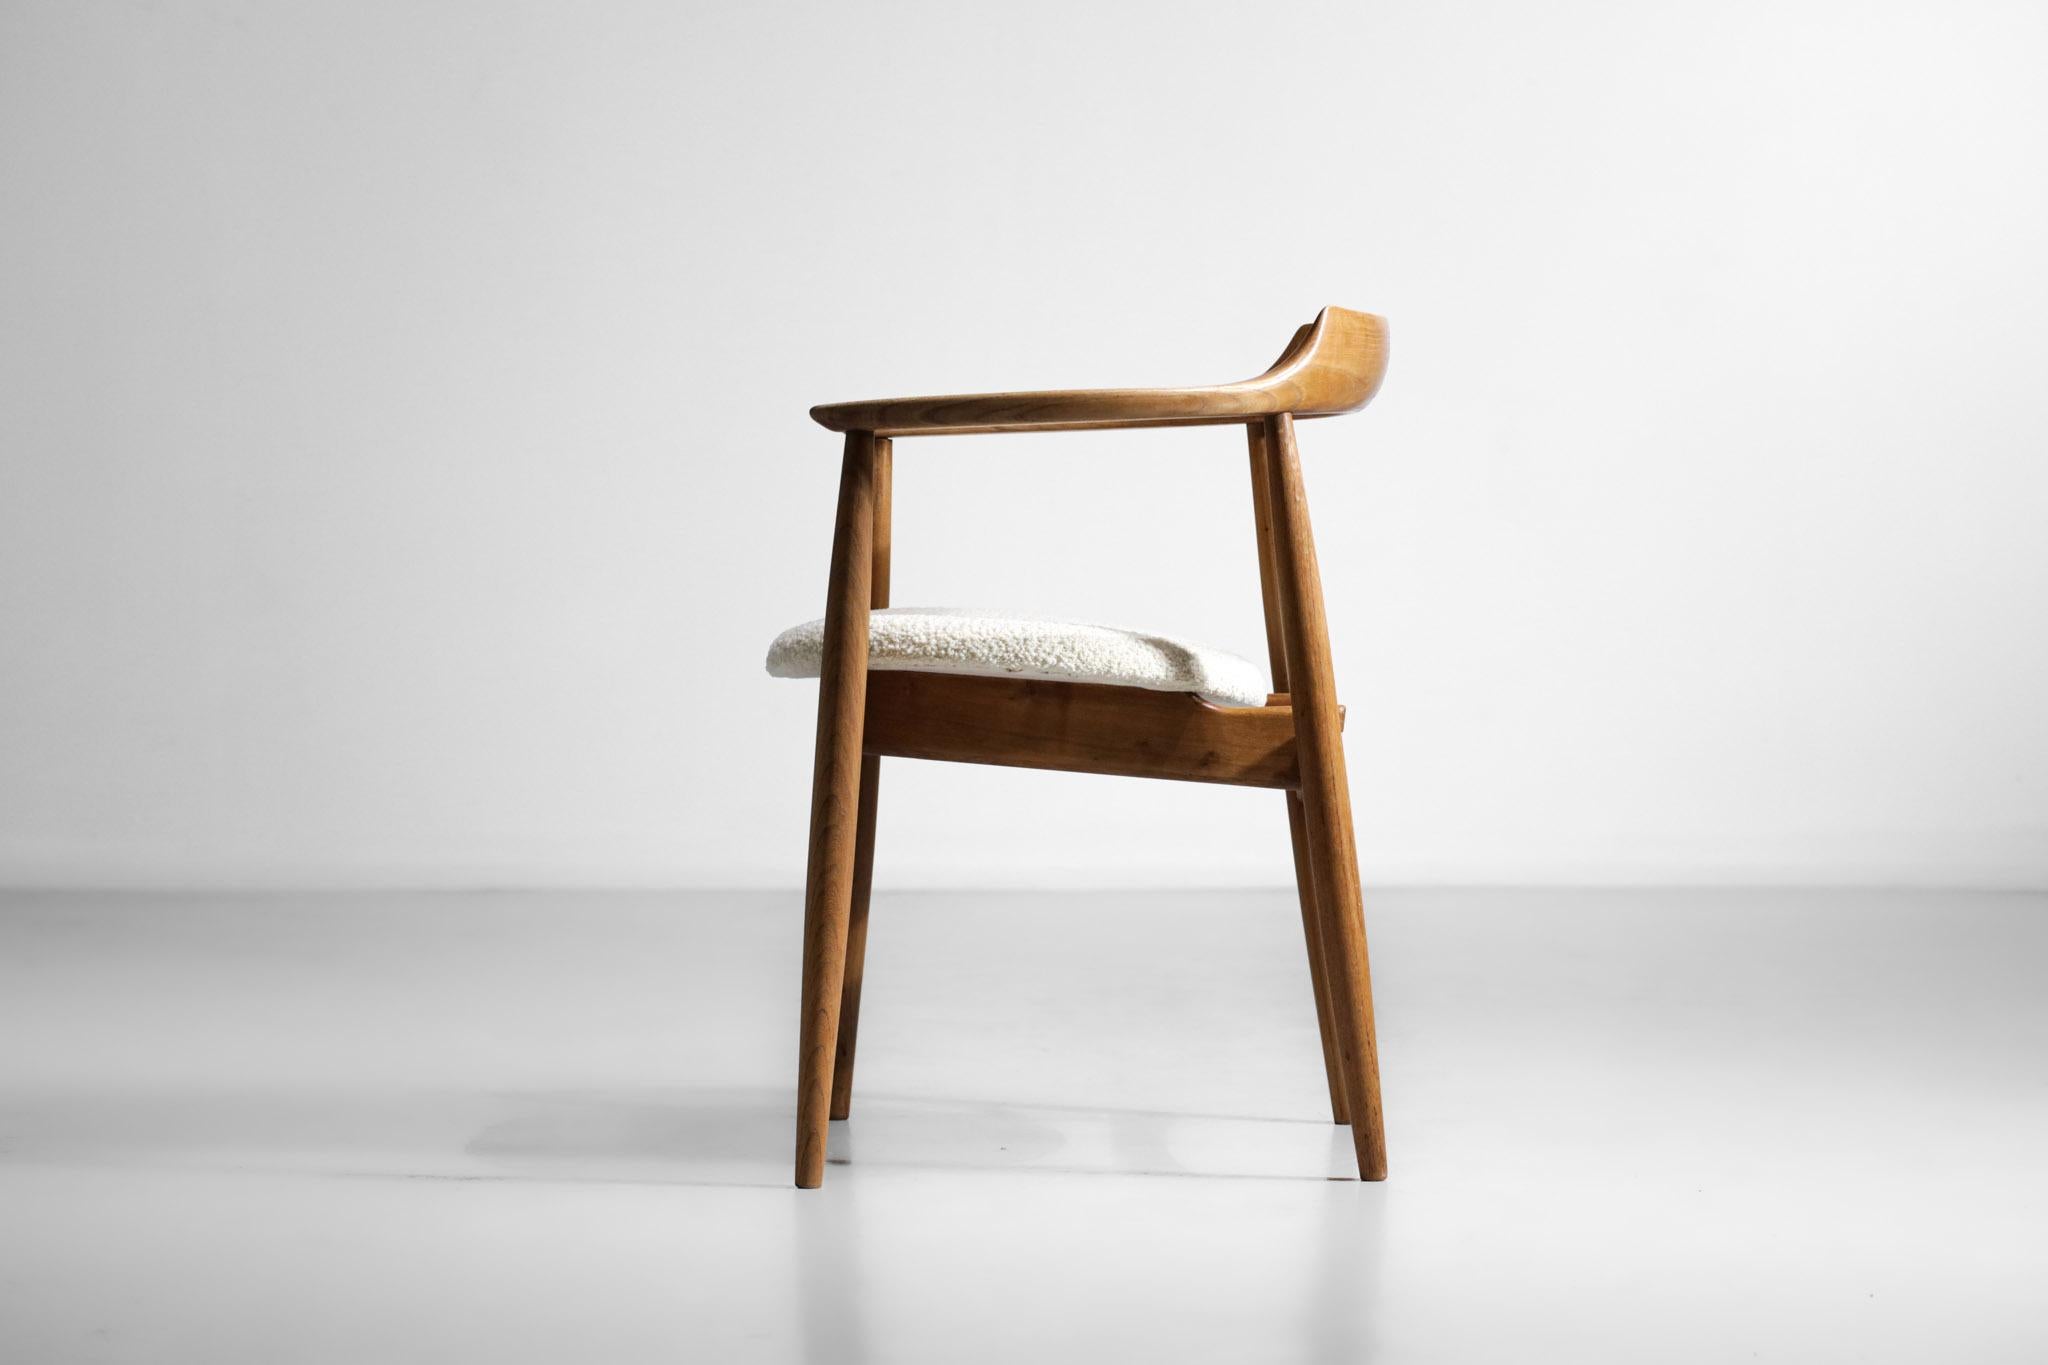 Skandinavischer Sessel aus den 60er Jahren, im Stil der Arbeiten von Hans Wegner. Massives Gestell aus heller Eiche, Sitz mit weißer Brisson Bruneel-Wolle bezogen. Sehr schöne zeitgenössische Arbeit mit reinen und nüchternen Linien, typisch für